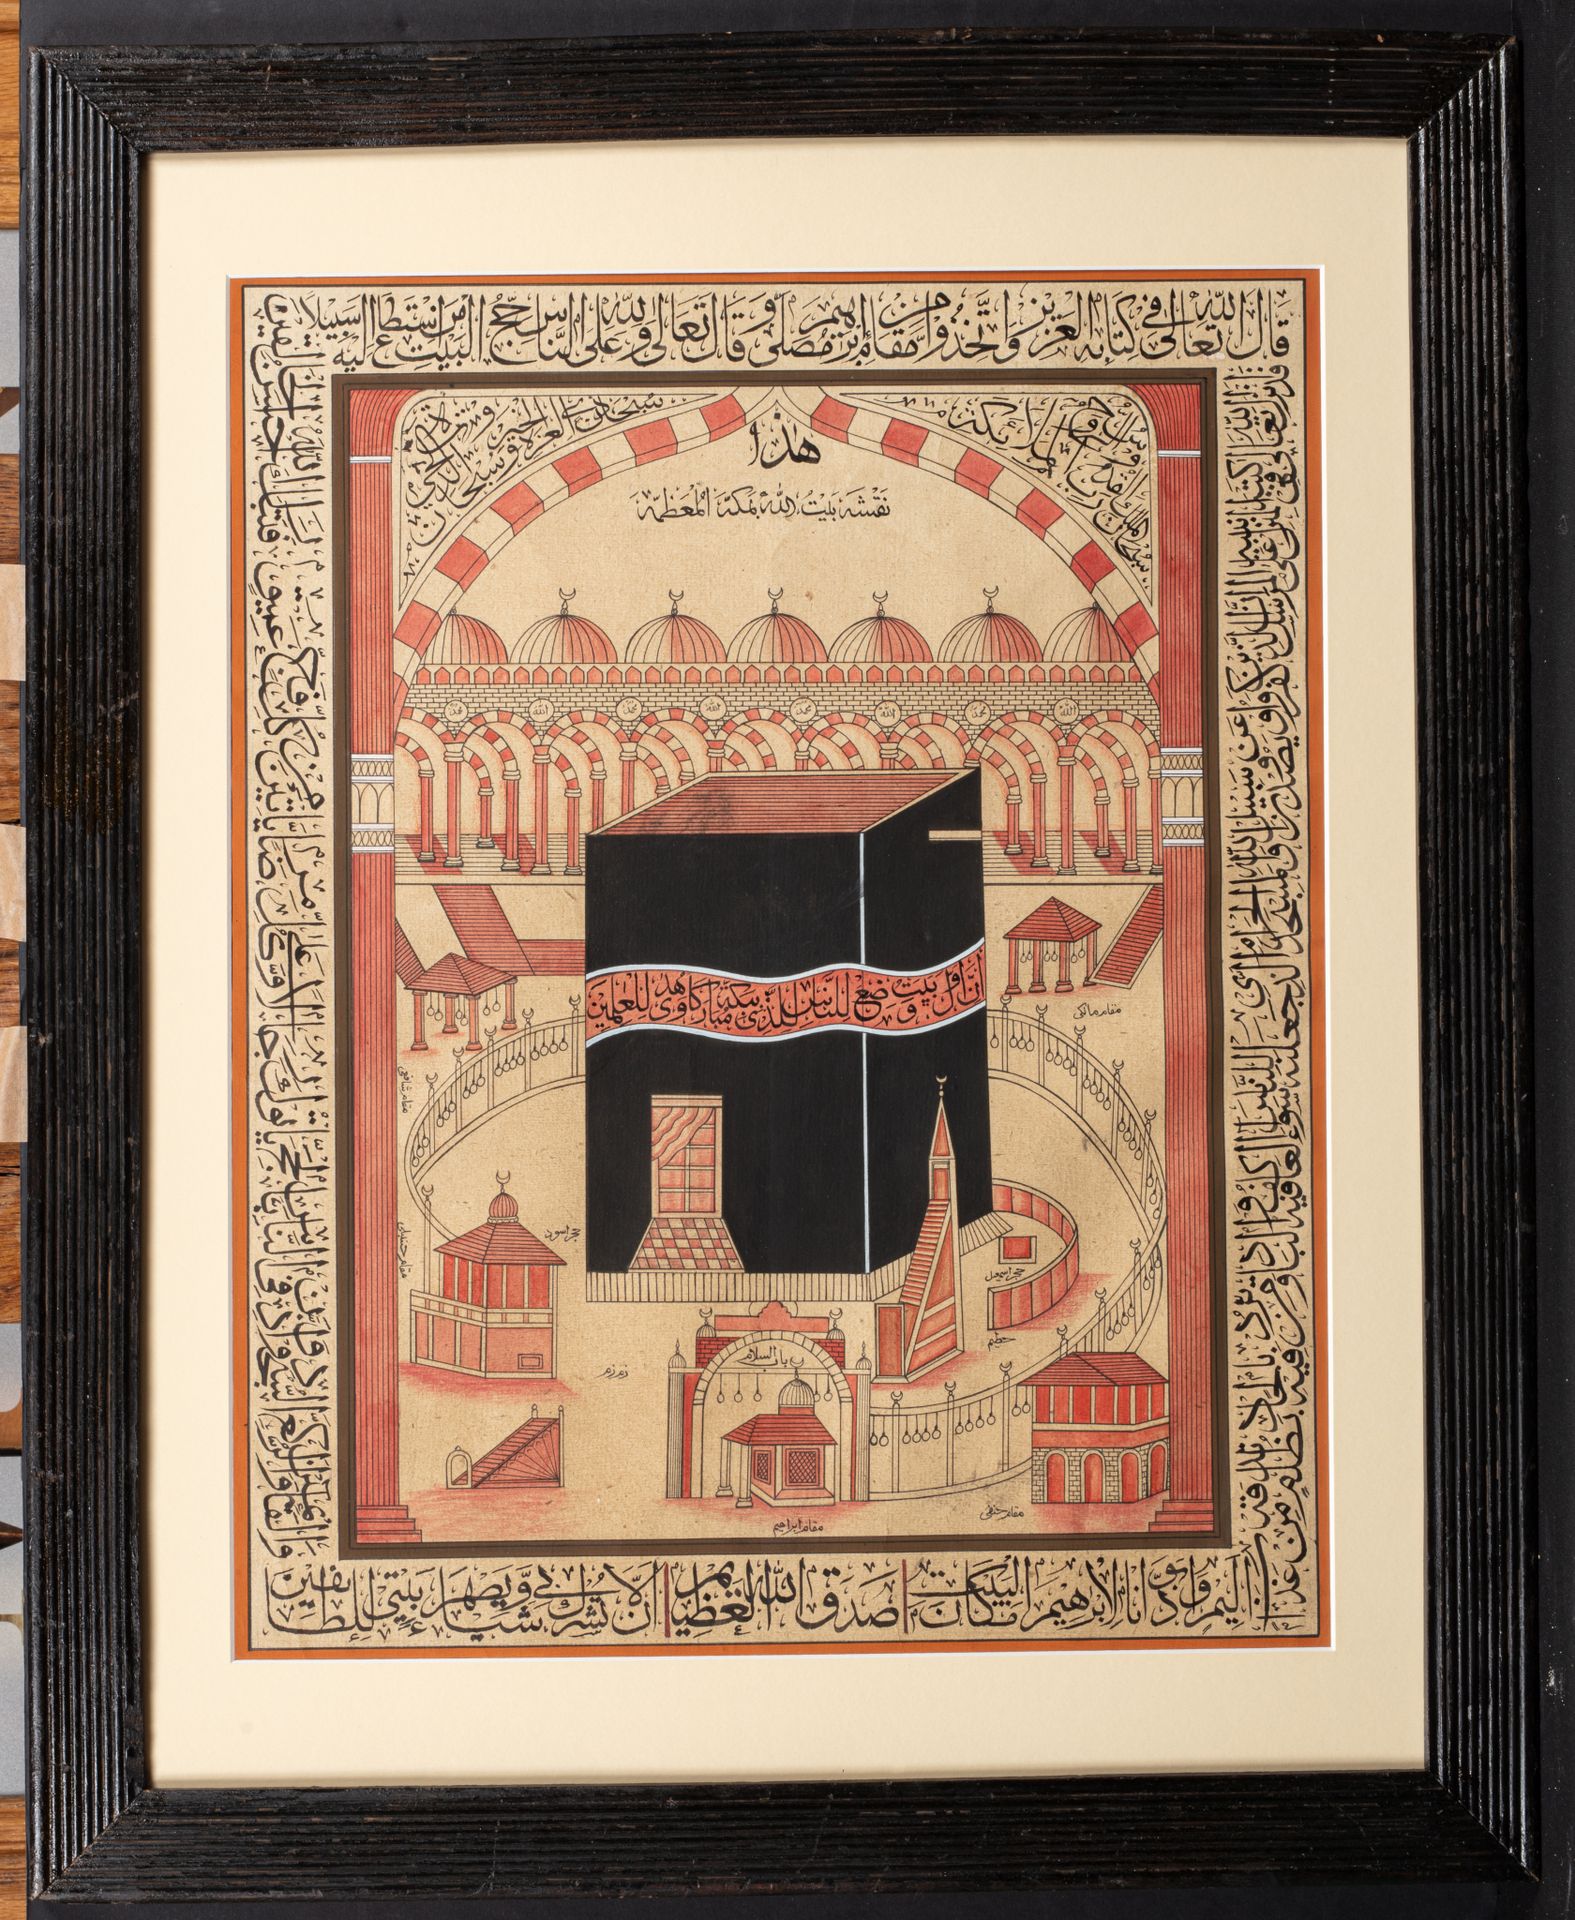 Peinture de la Mecque, Inde, 1920-1930 Schema der Masjid al-Haram - Heiligtum vo&hellip;